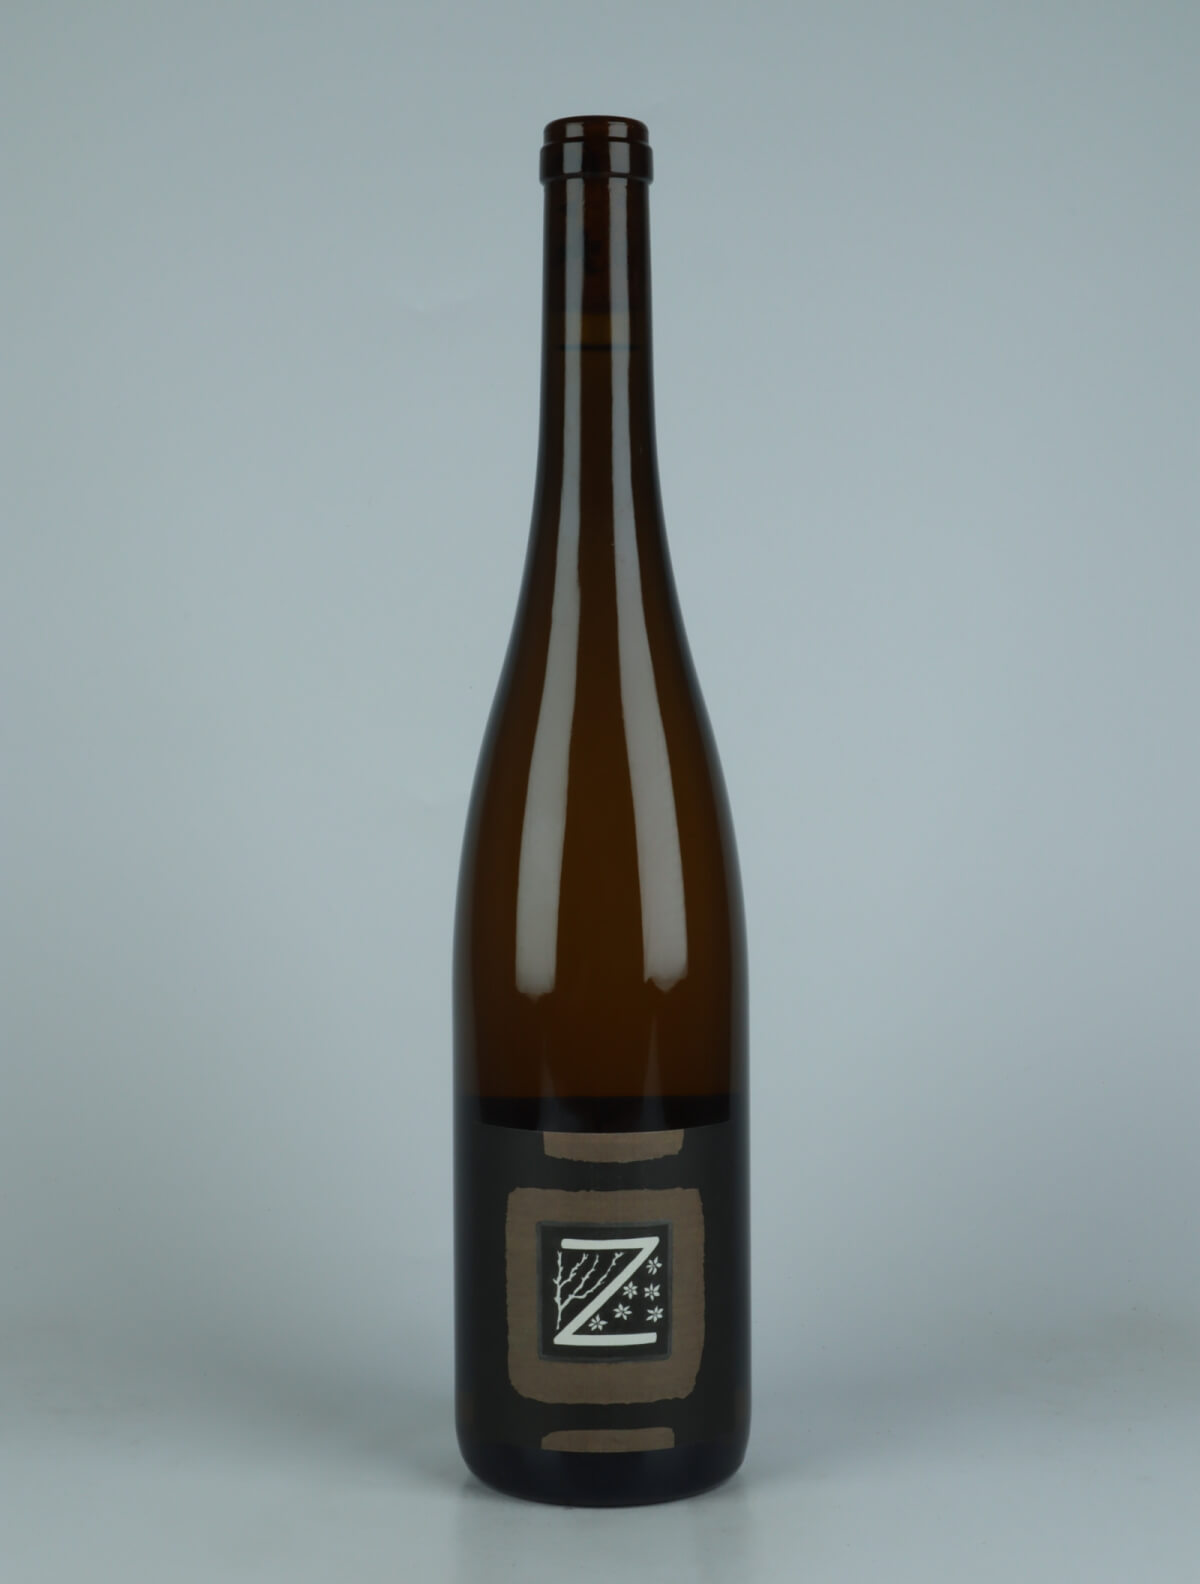 En flaske 2022 Riesling - Grand Cru Zotzenberg Hvidvin fra Domaine Rietsch, Alsace i Frankrig